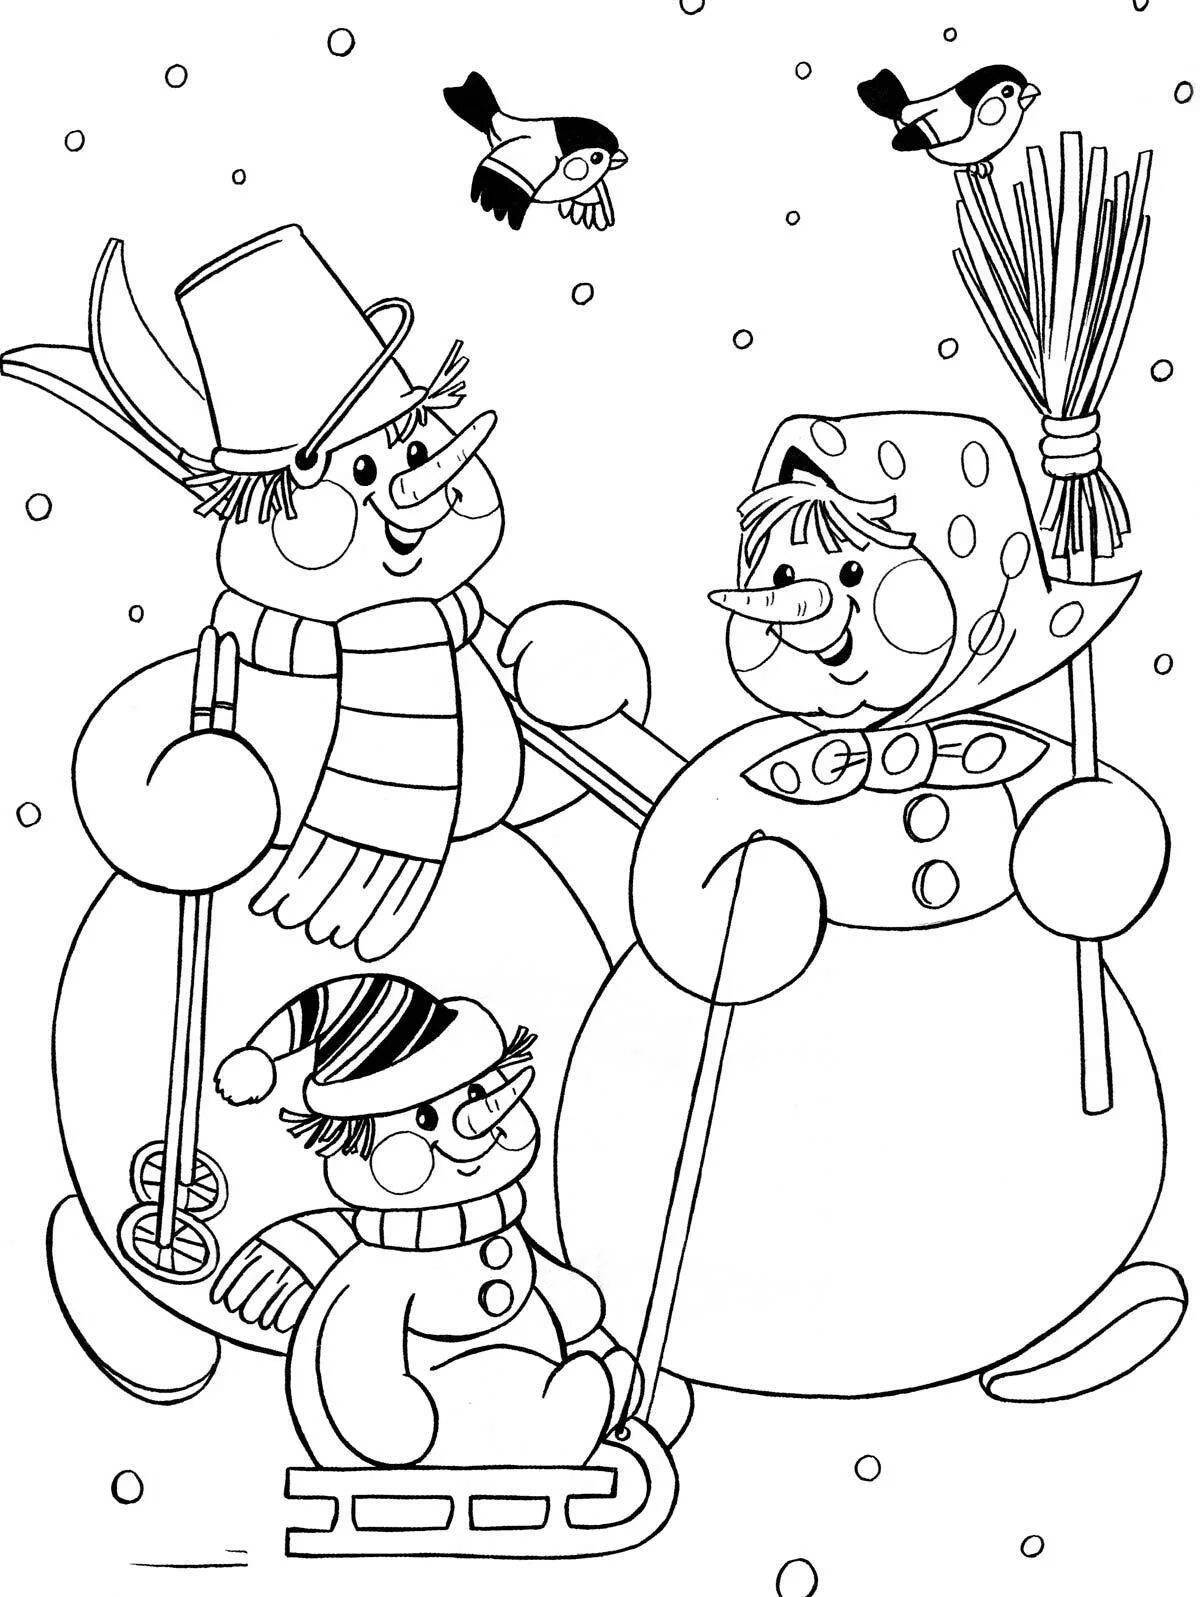 Радостная раскраска снеговик для детей 5 лет